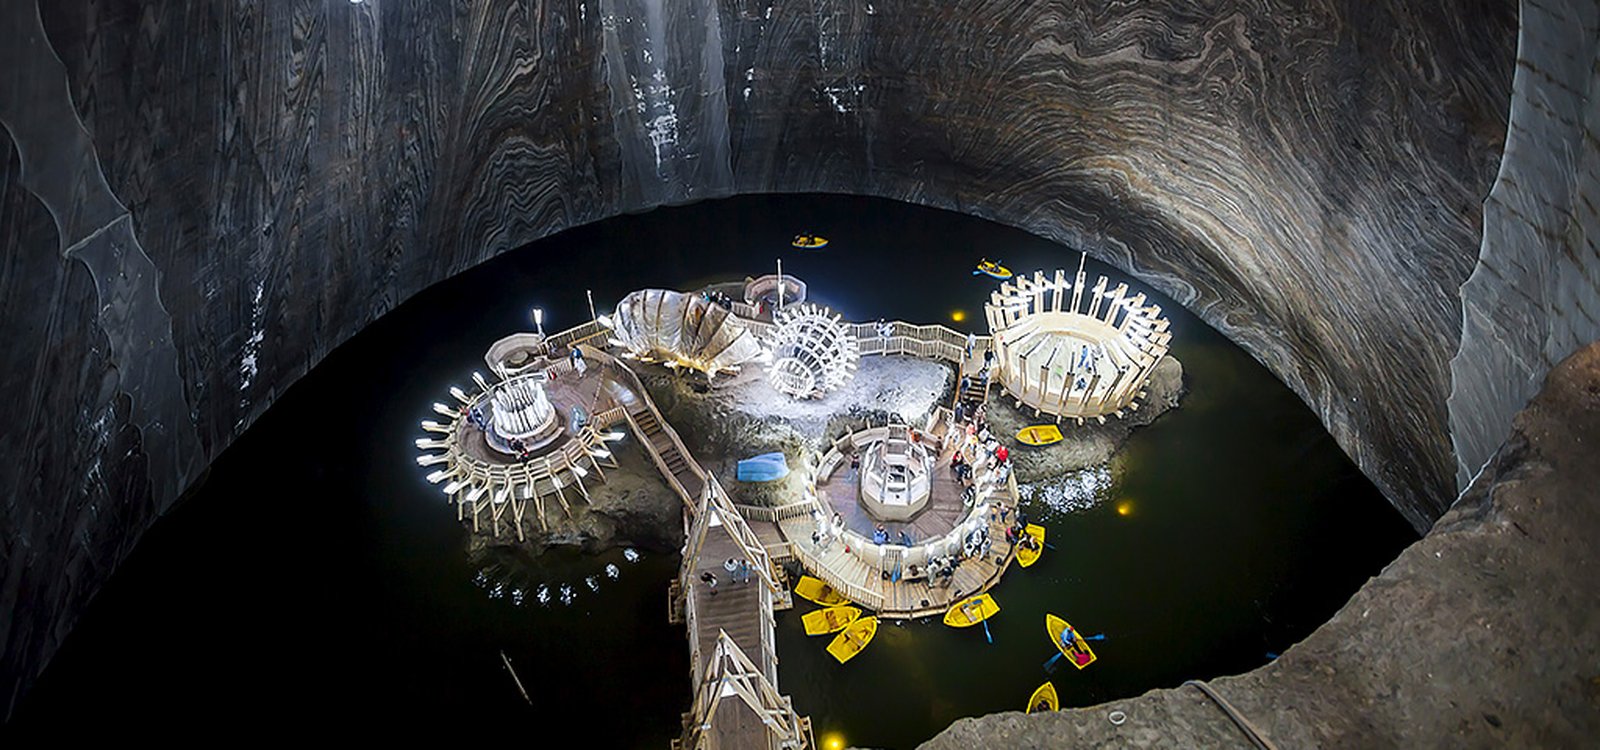 <p>W kopalni Salina Turda w Rumunii jest podziemne jezioro, po którym zwiedzający turyści mogą pływać  łodziami wiosłowymi.</p>
